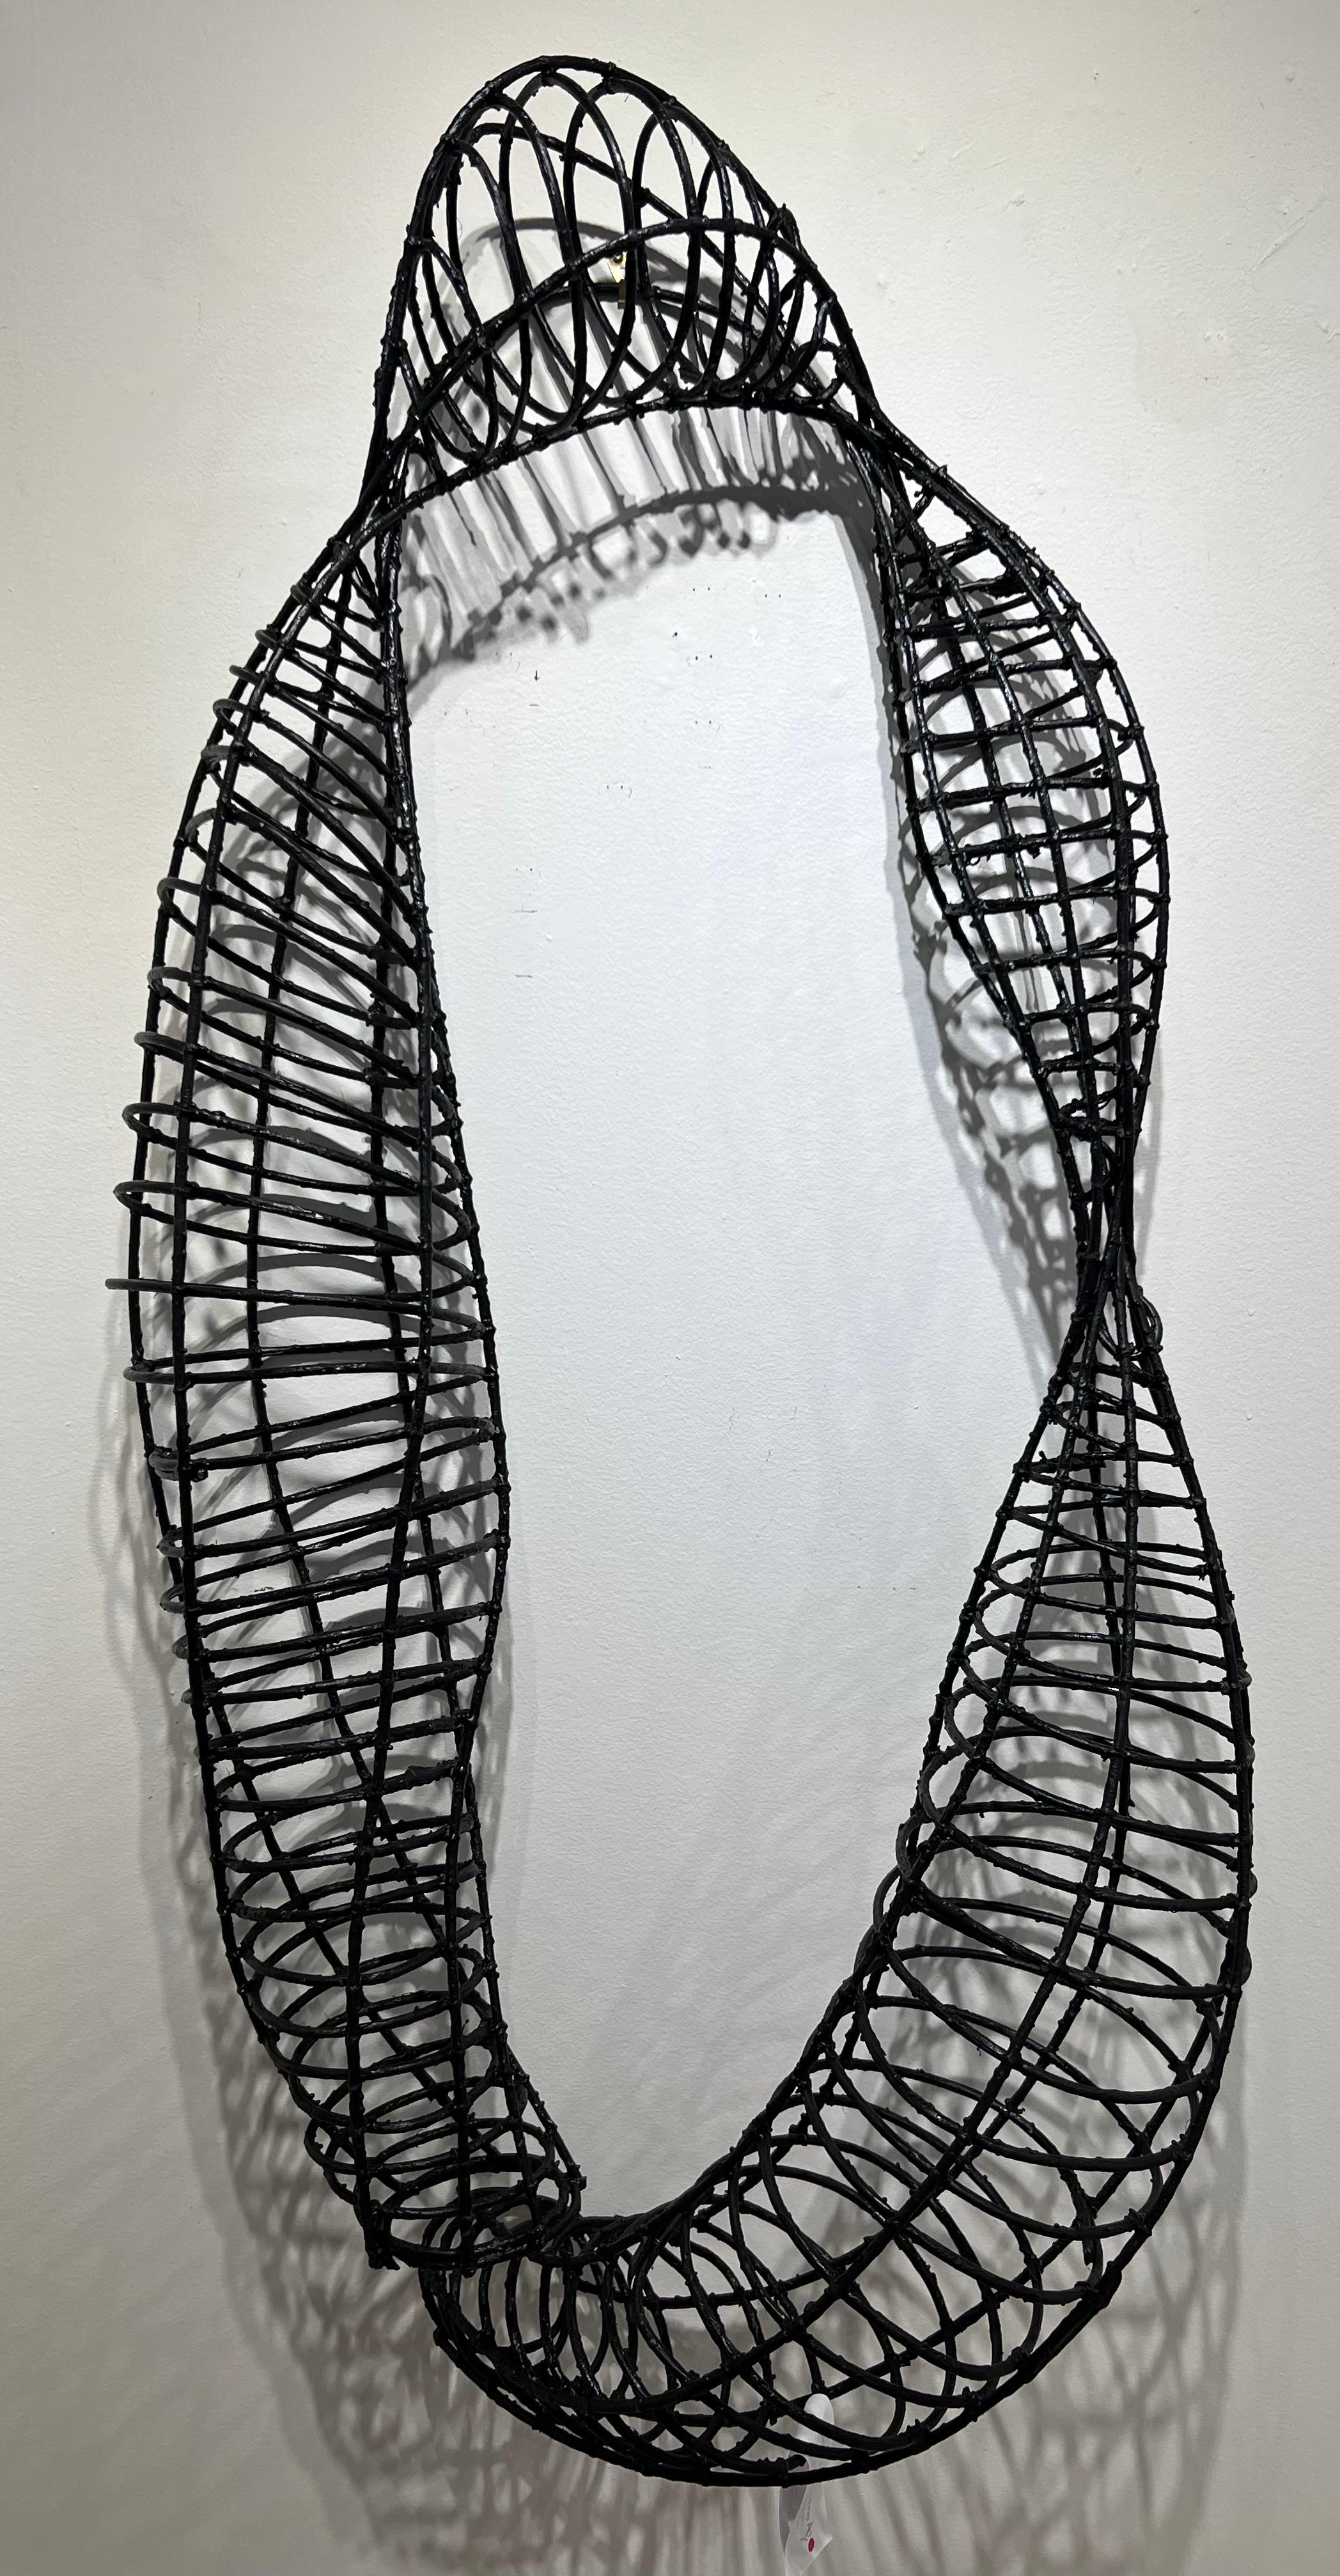 Eileen Braun Abstract Sculpture - Sound Wave